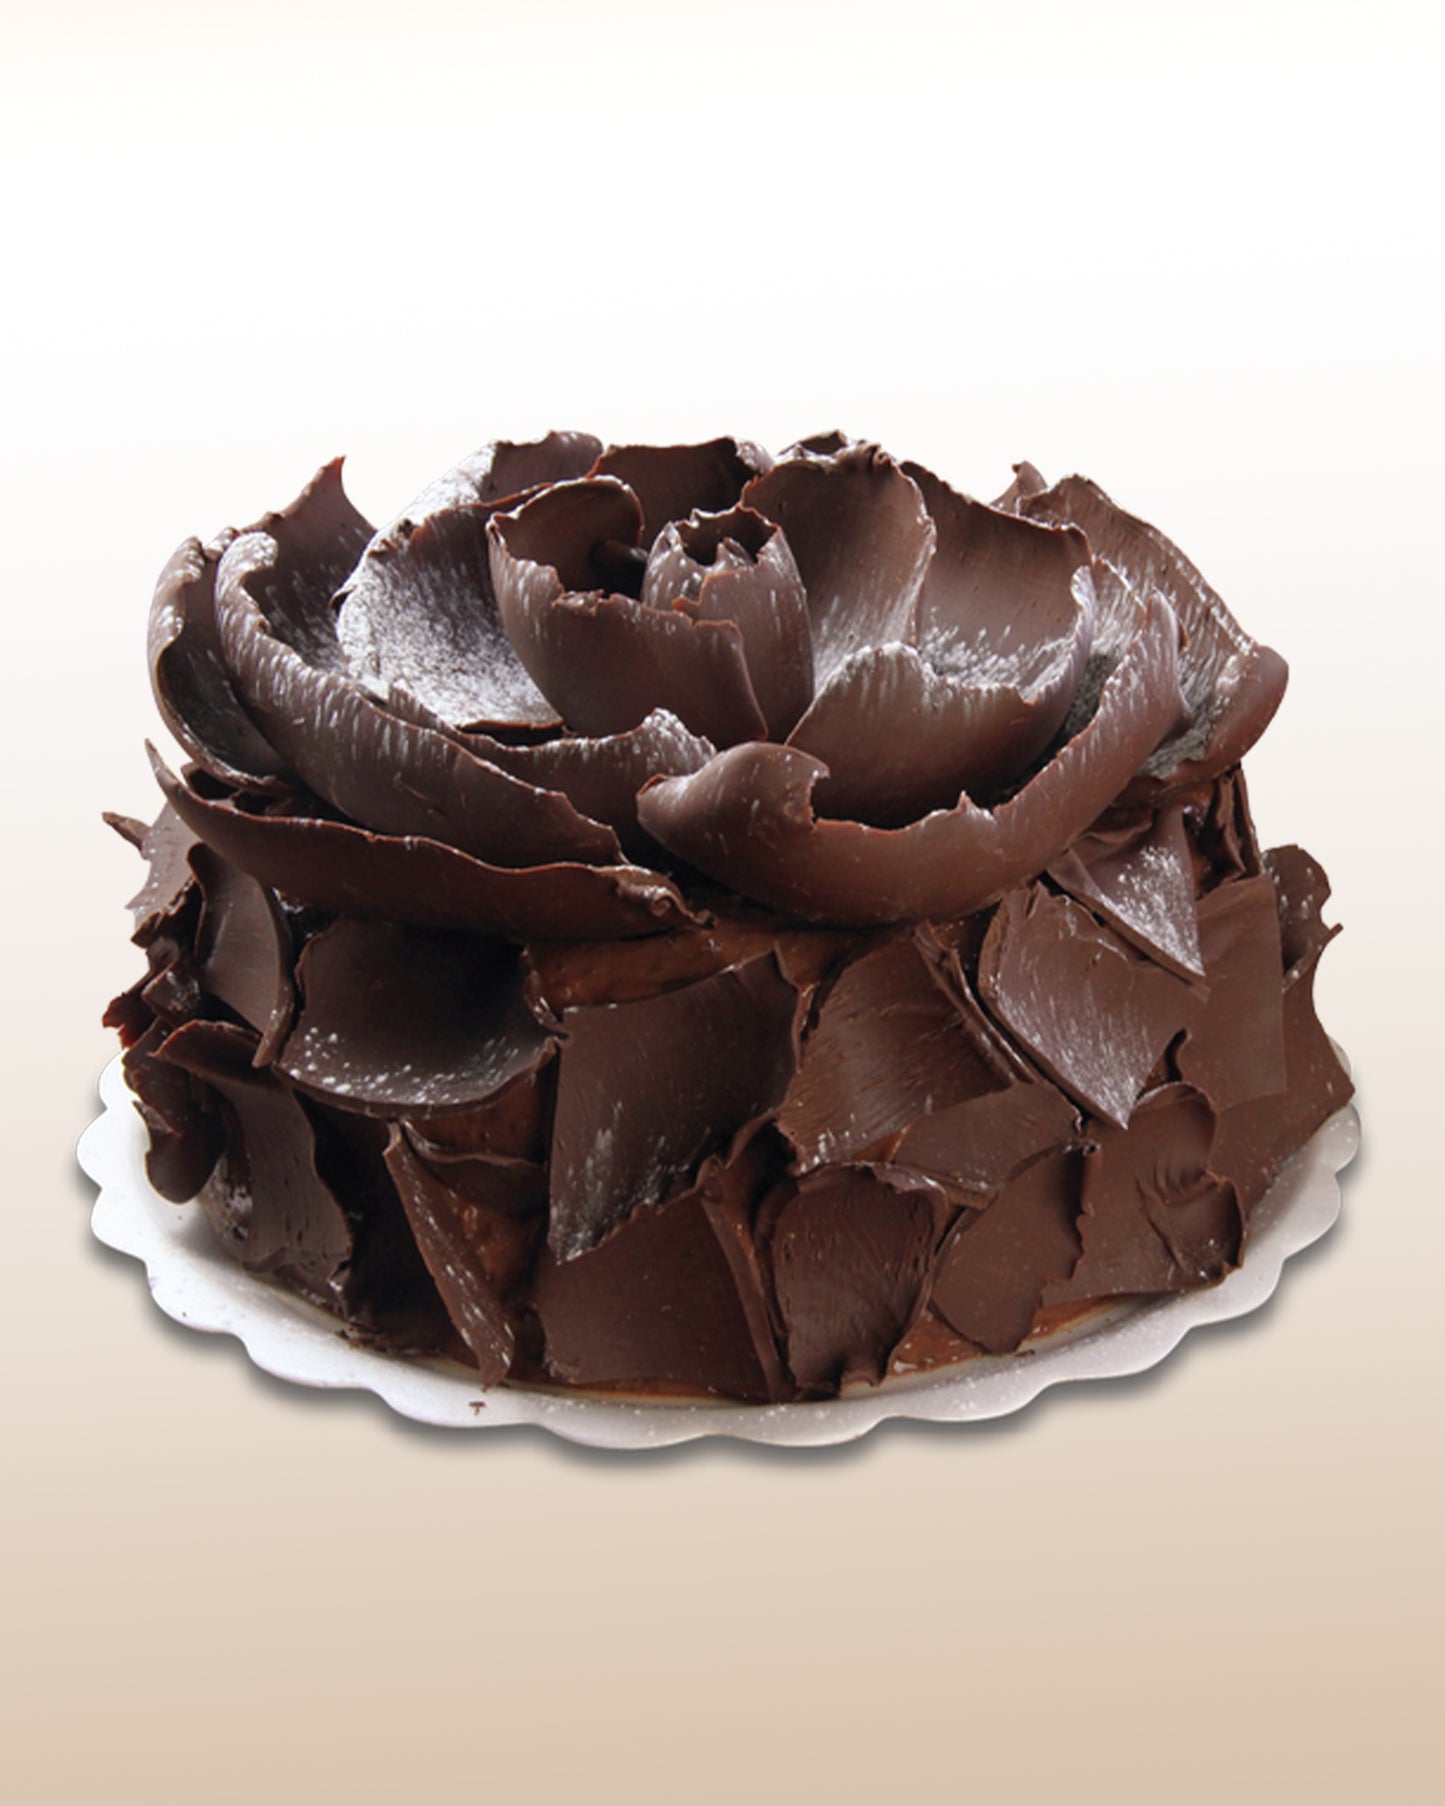 Black Rose Cake - 12 Serving Portions